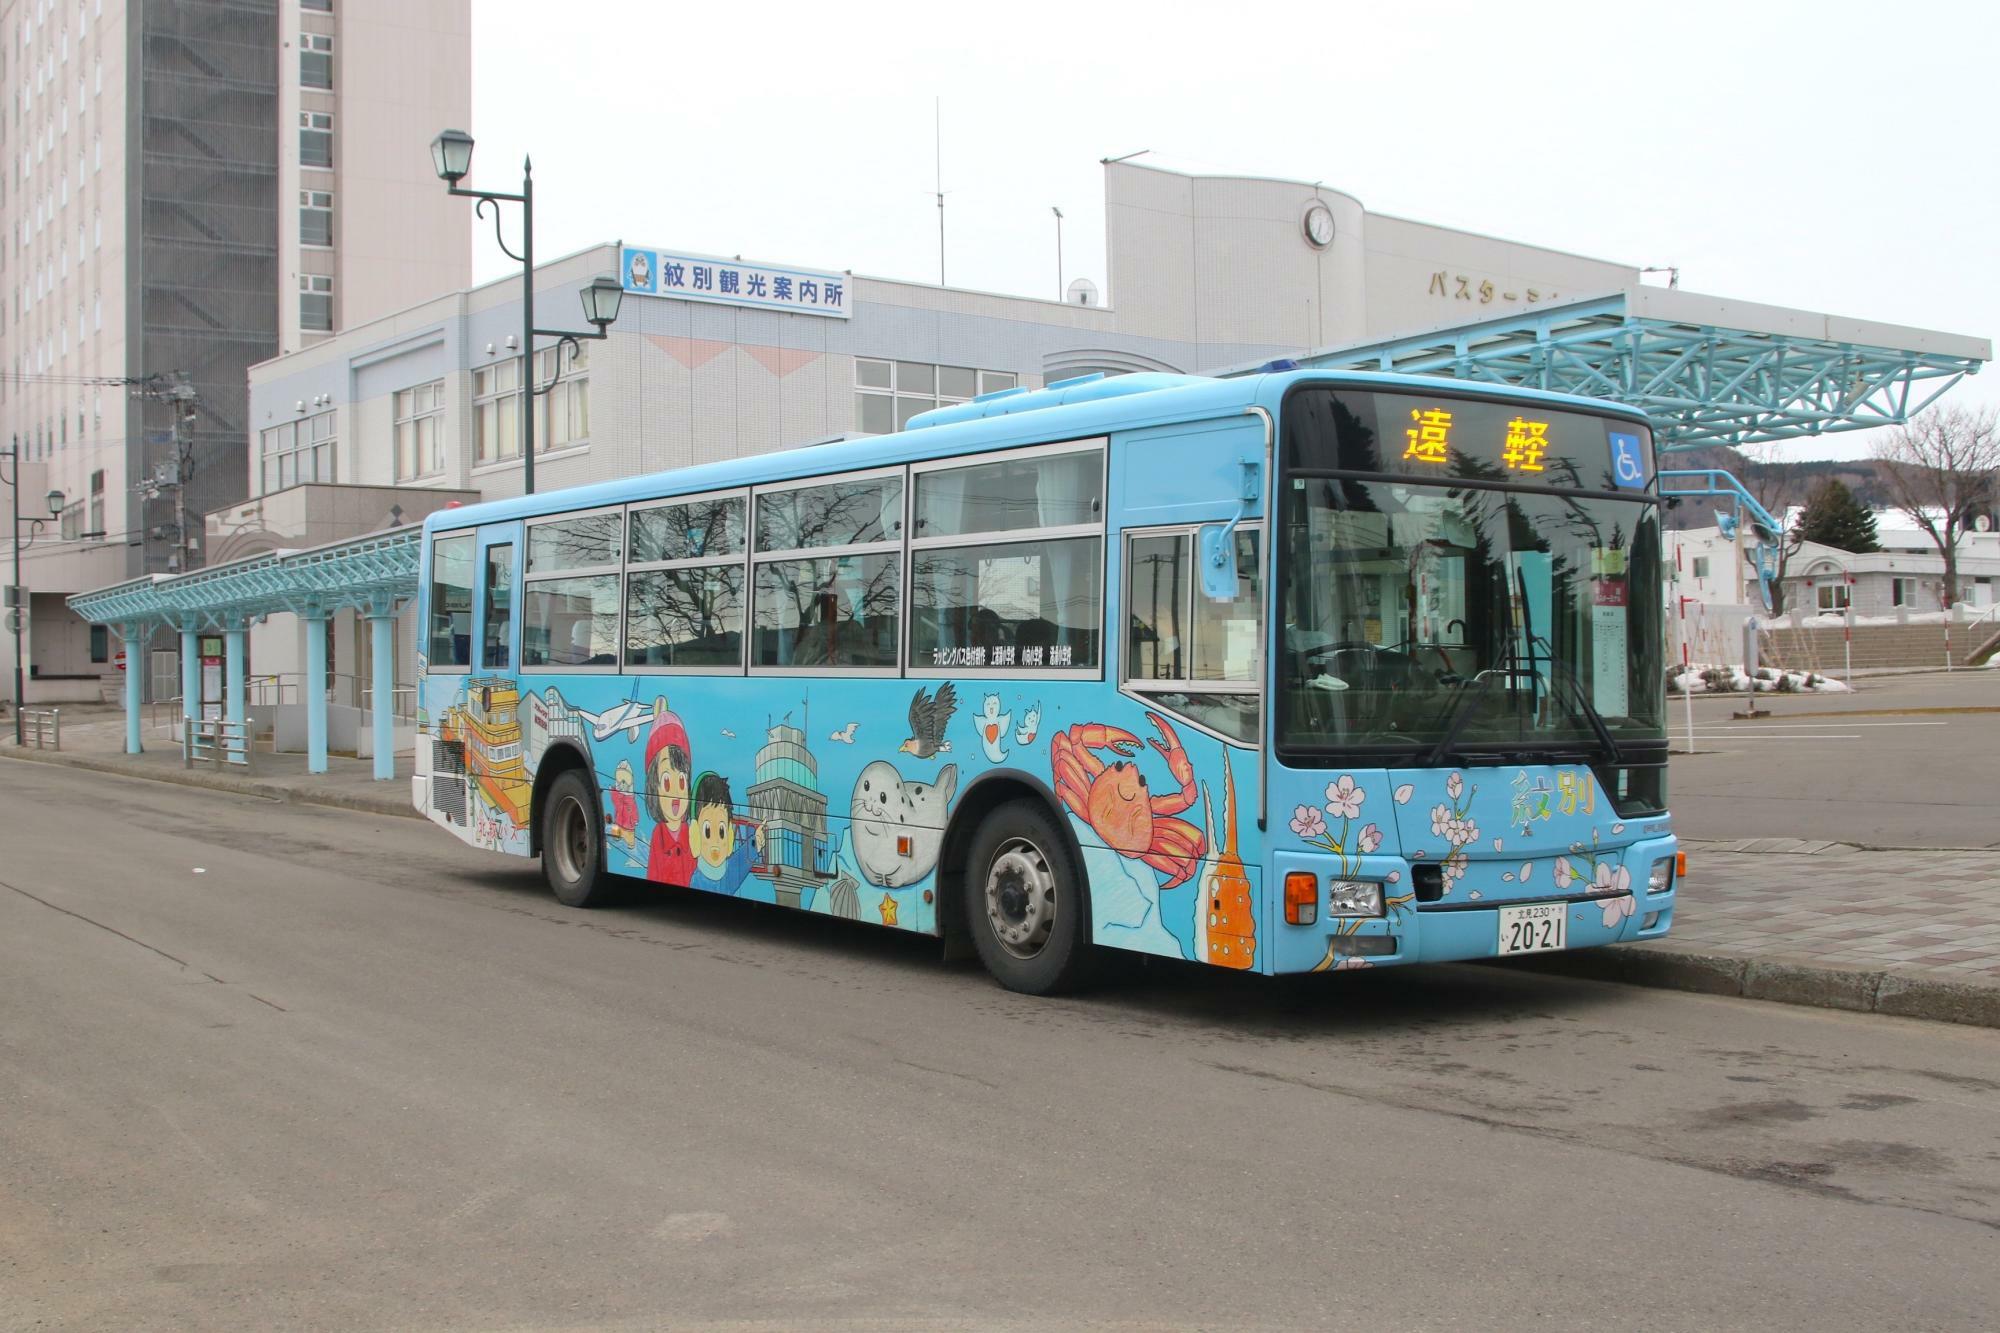 紋別小、潮見小、南丘小、上渚滑小、小向小、渚滑小の児童が色付けした北紋バスの車体